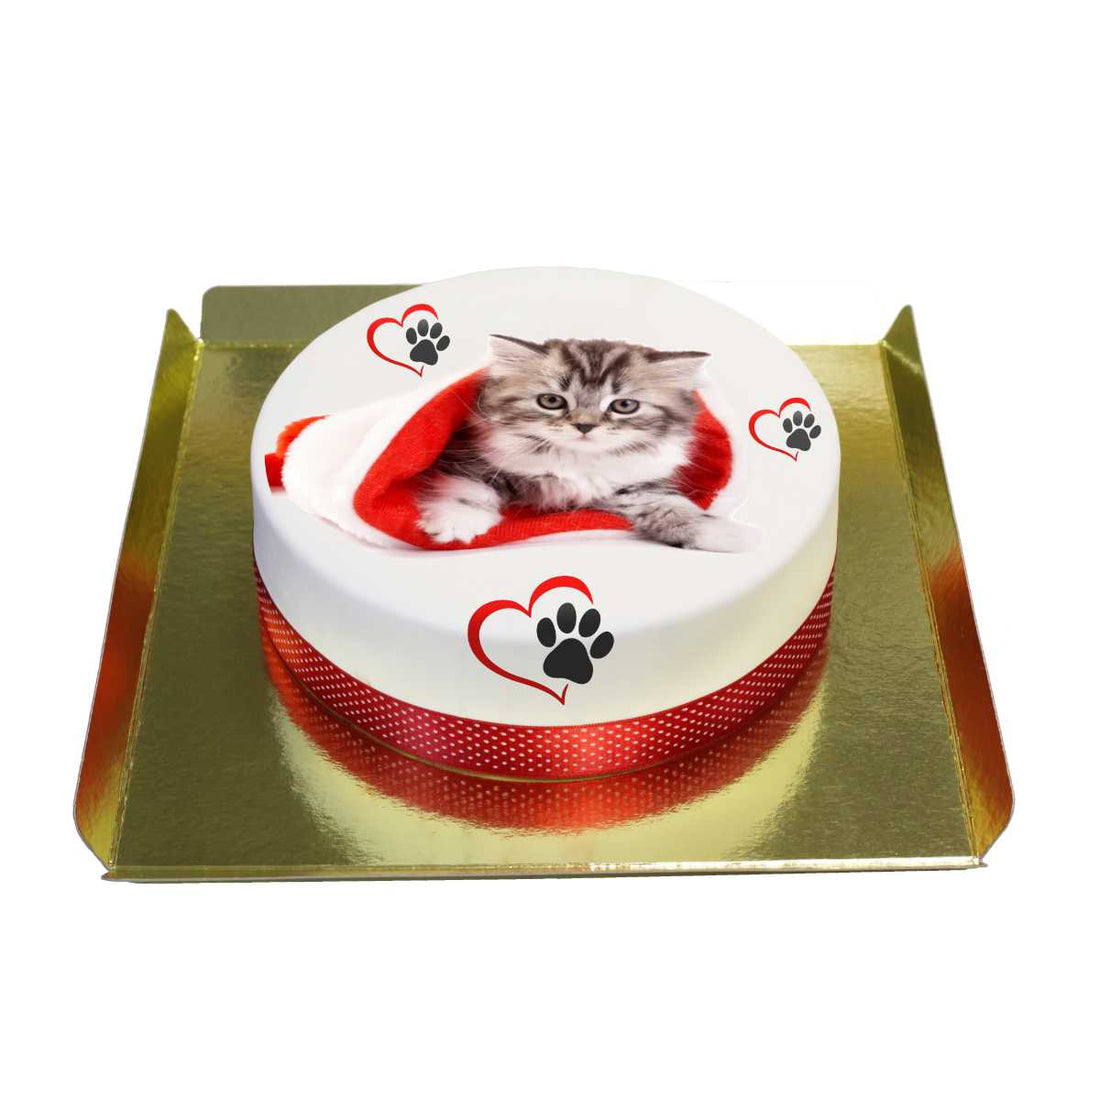 Kedi pastası